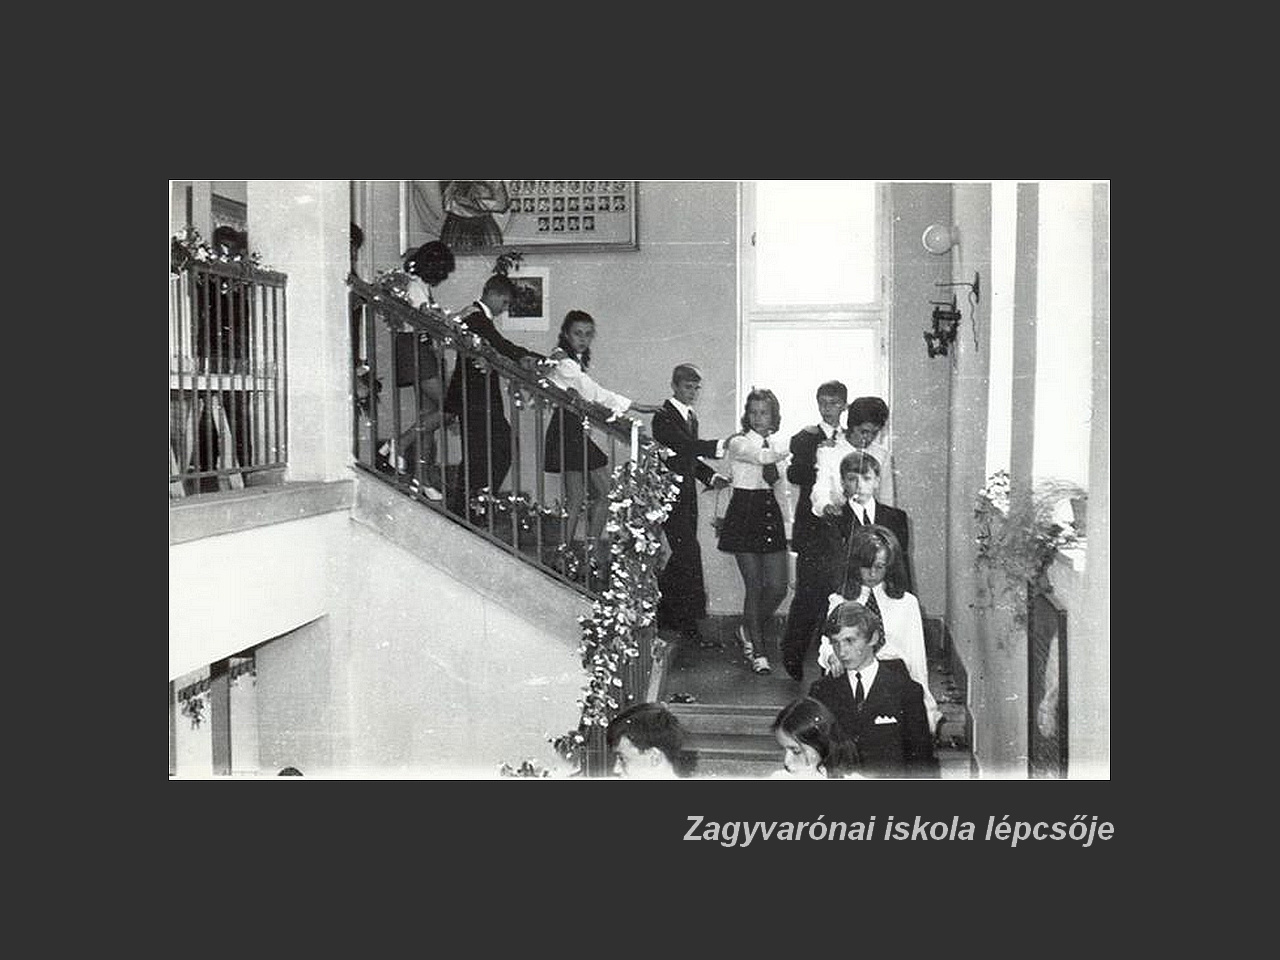 Salgótarján régen, Zagyvai iskolánk belső lépcsője, tablónk a fa